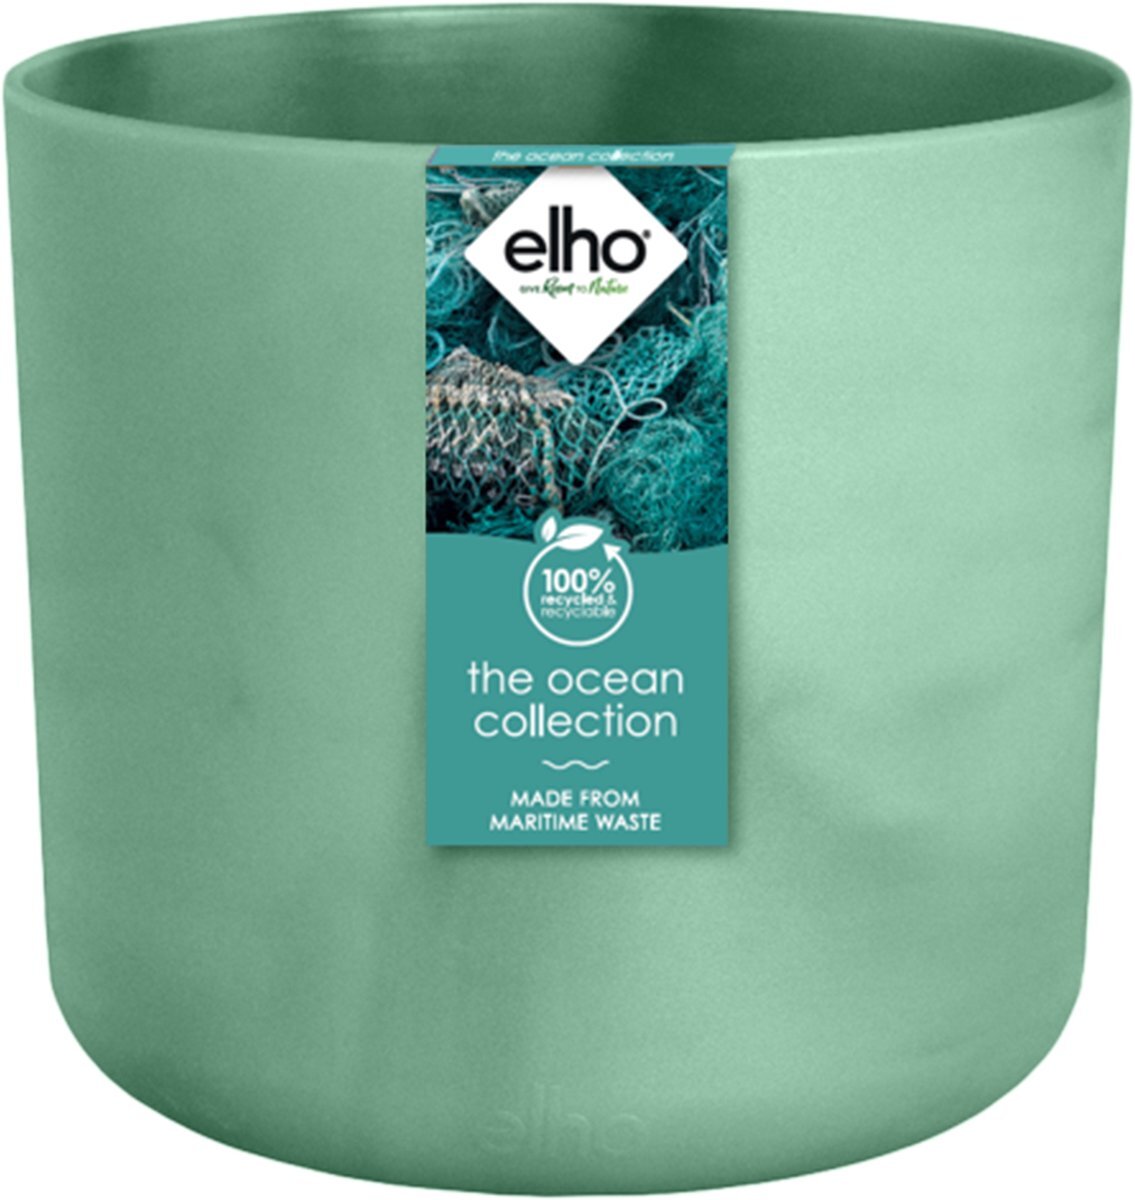 elho The Ocean Collection Round 22 - Bloempot van 100% gerecycled plastic - Ø 22,3 x H 20,4 - Groen/Pacifisch Groen